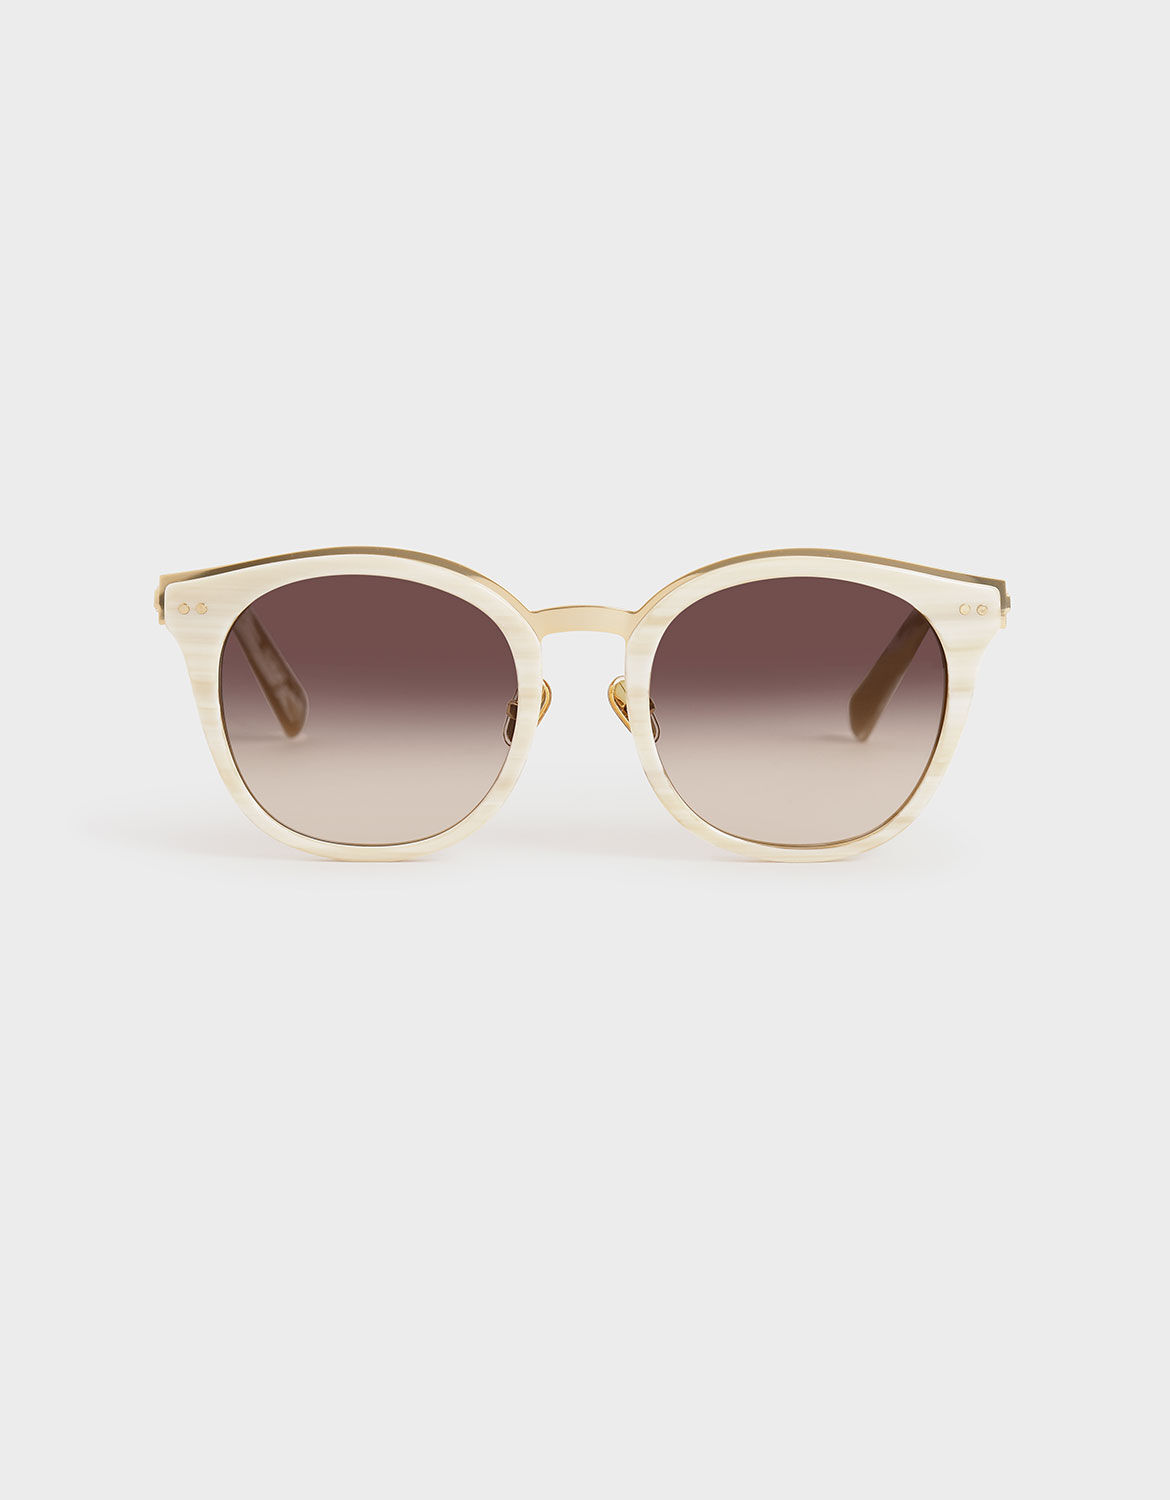 white frame wayfarer sunglasses